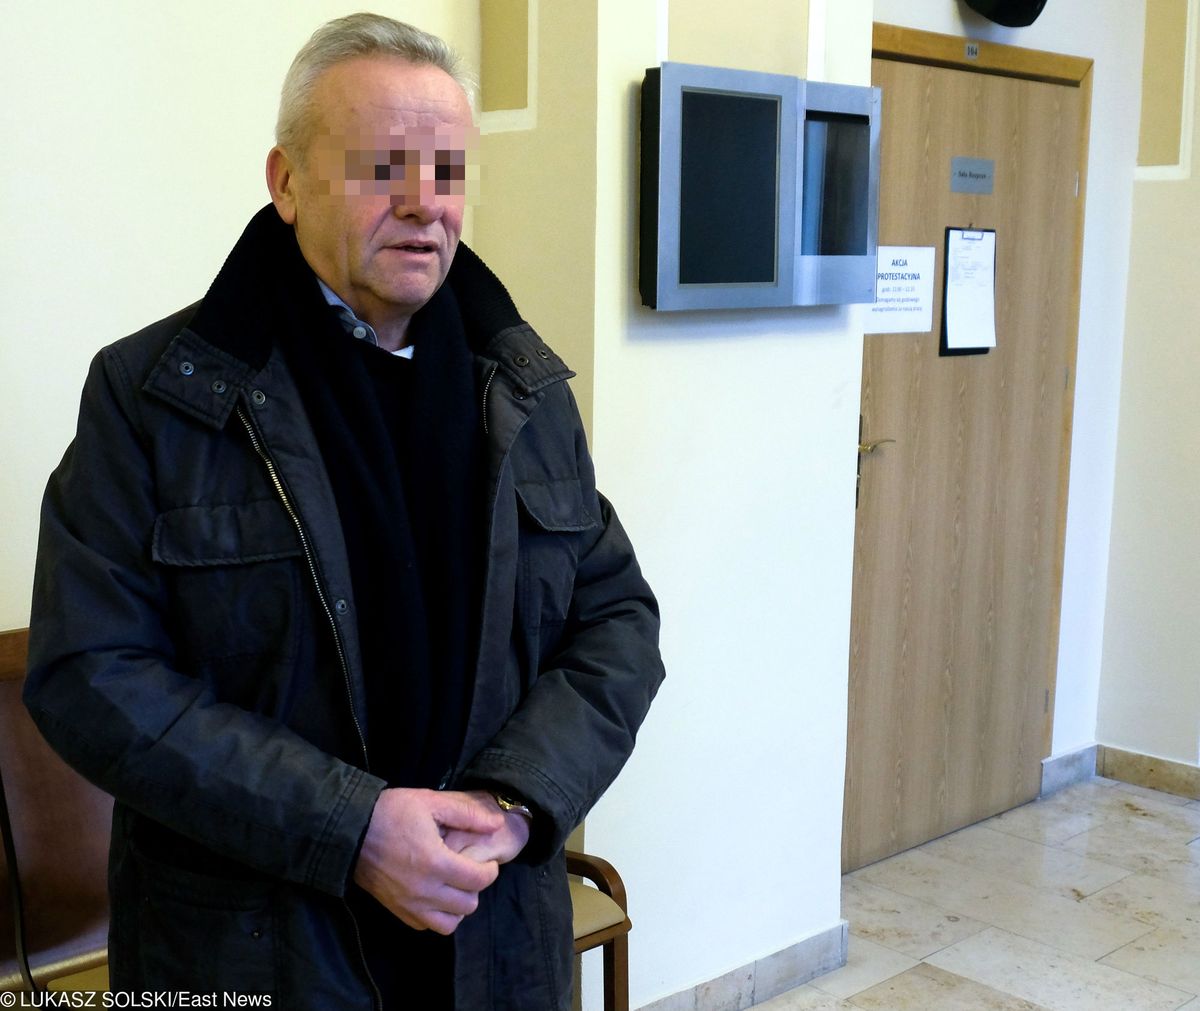 Mirosław Karapyta skazany na 4 lata więzienia. "Jestem niewinny"